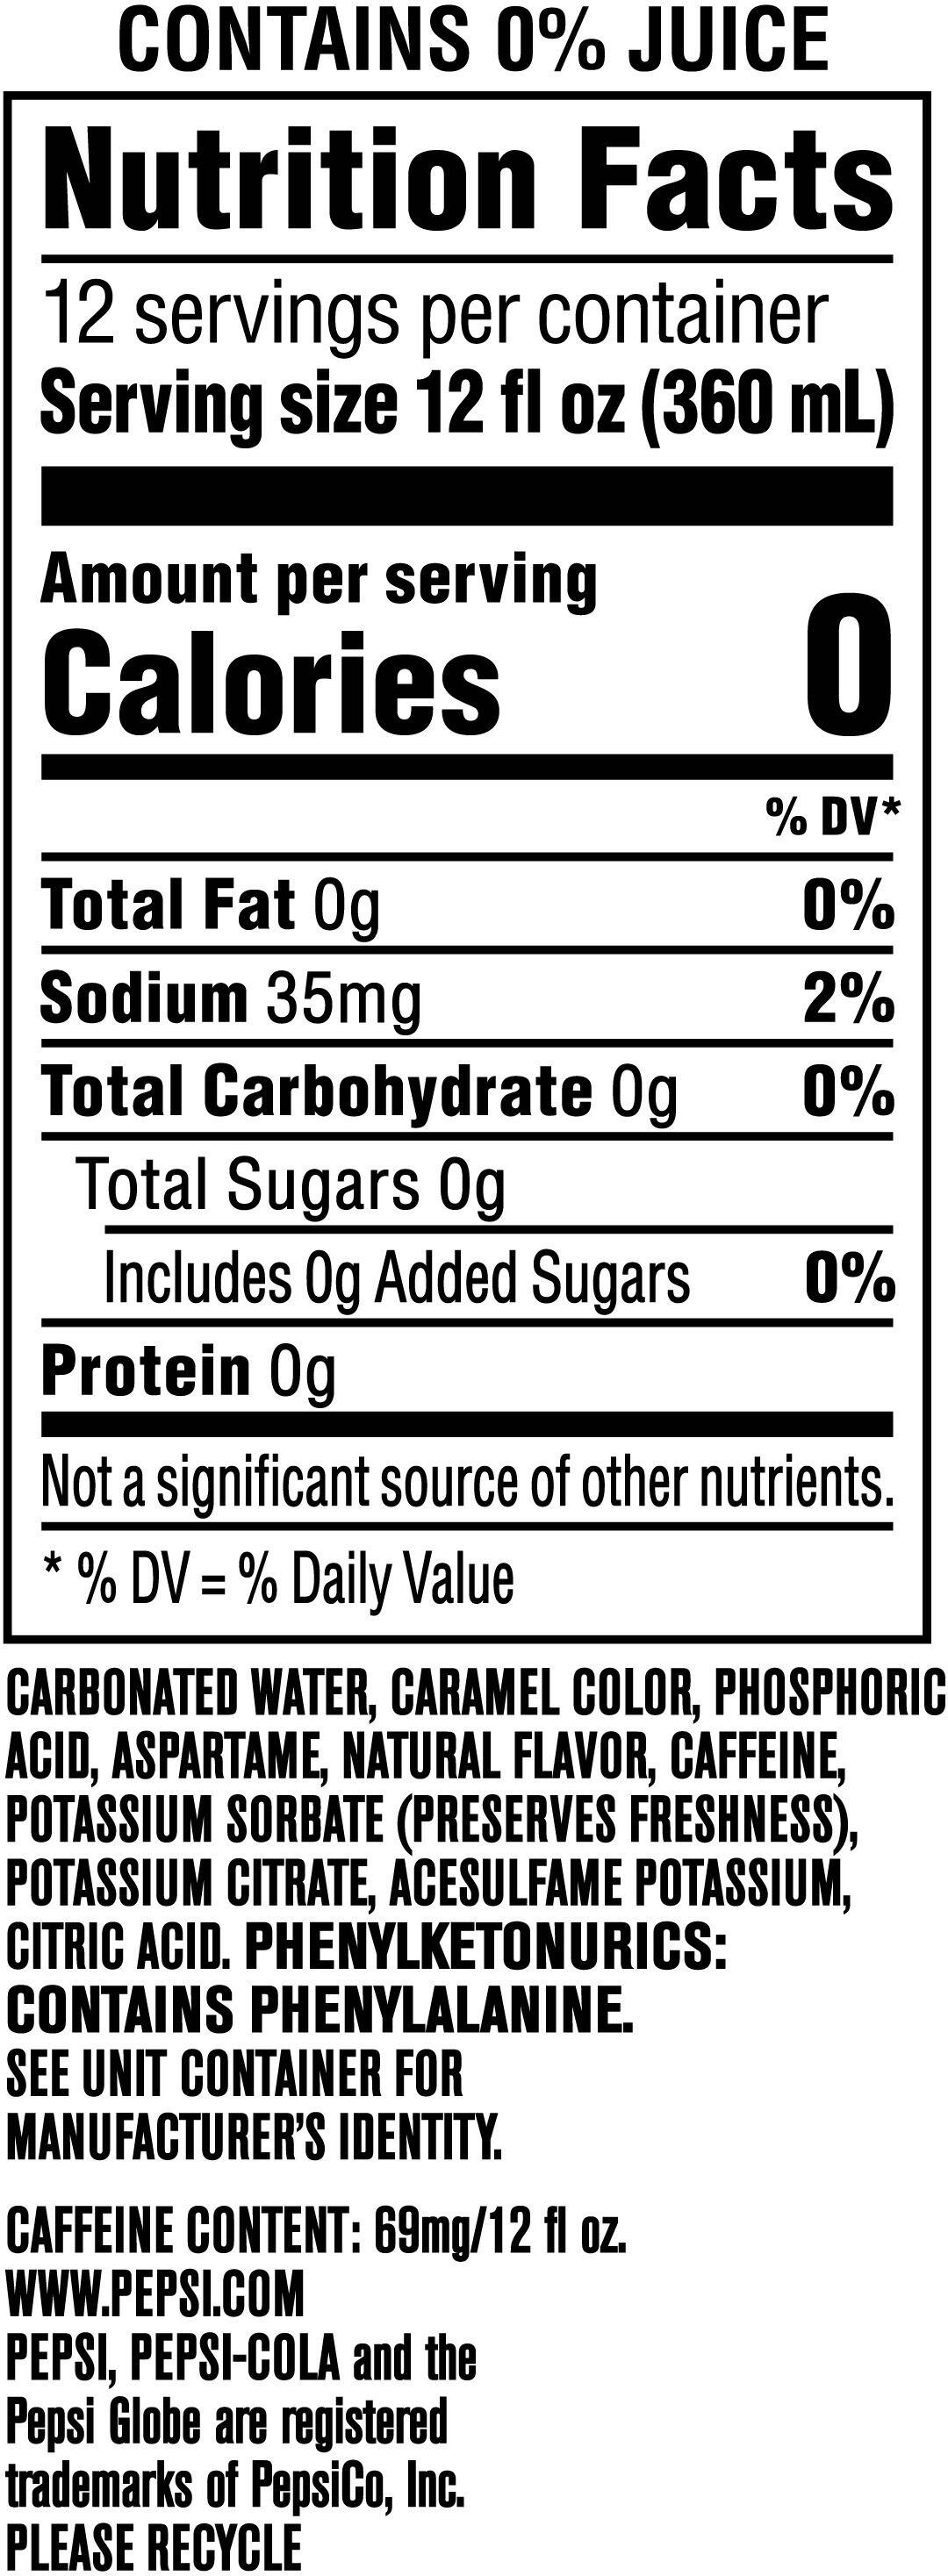 Image describing nutrition information for product Pepsi Zero Sugar Mango